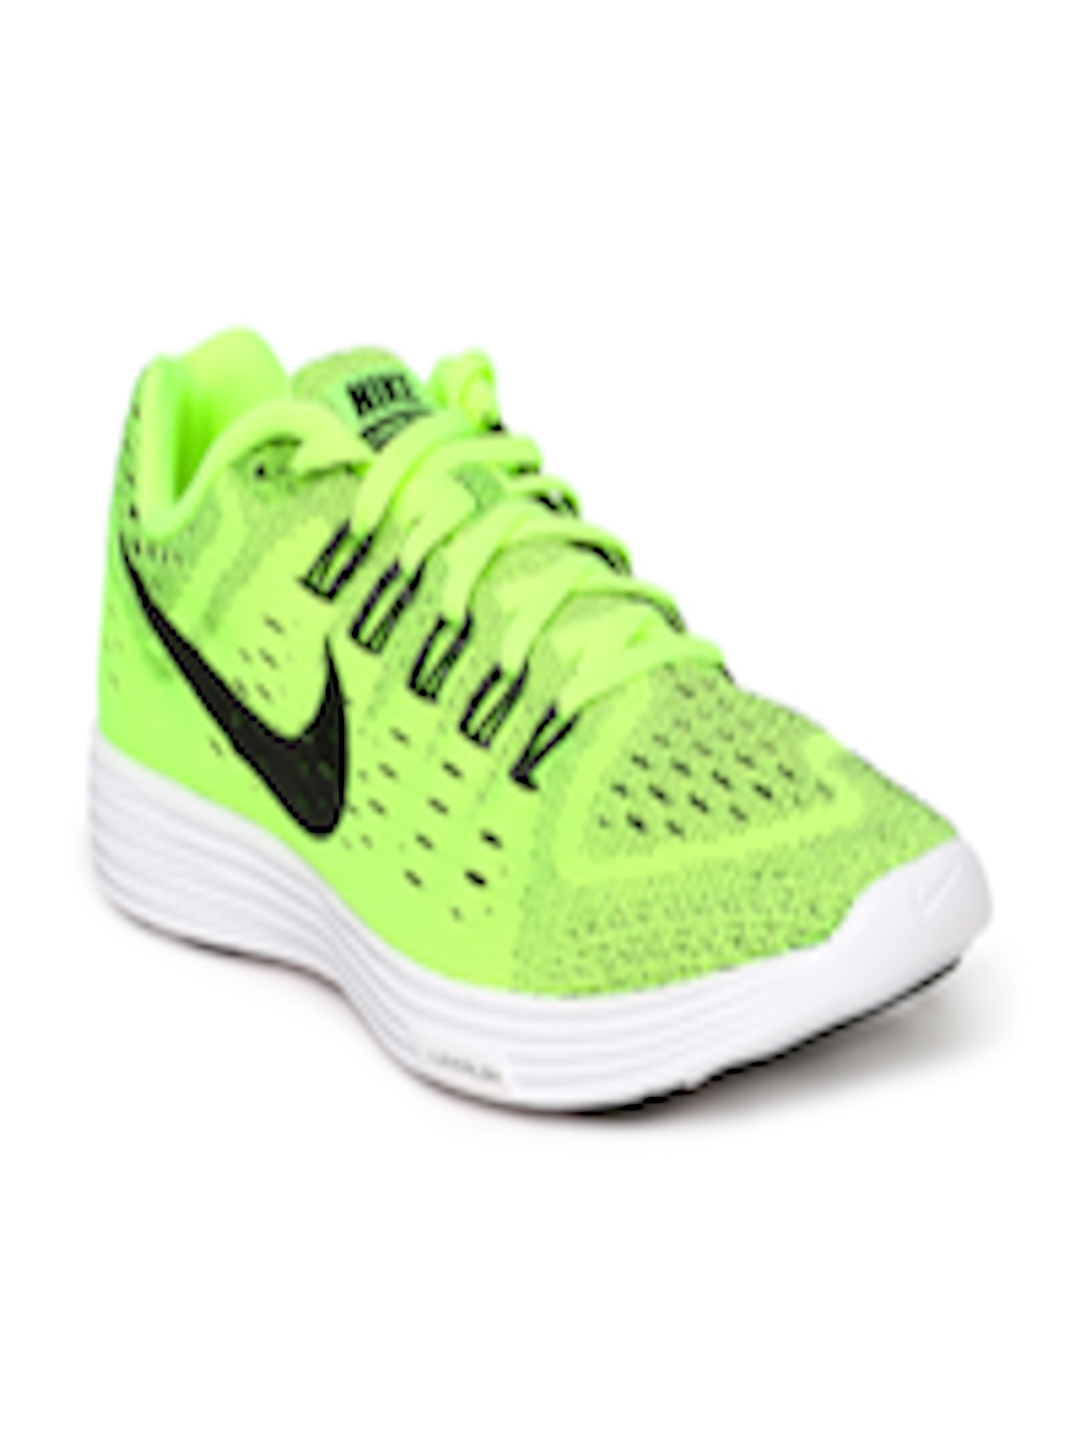 Buy Nike Men Neon Green Lunartempo Training Shoes Sports